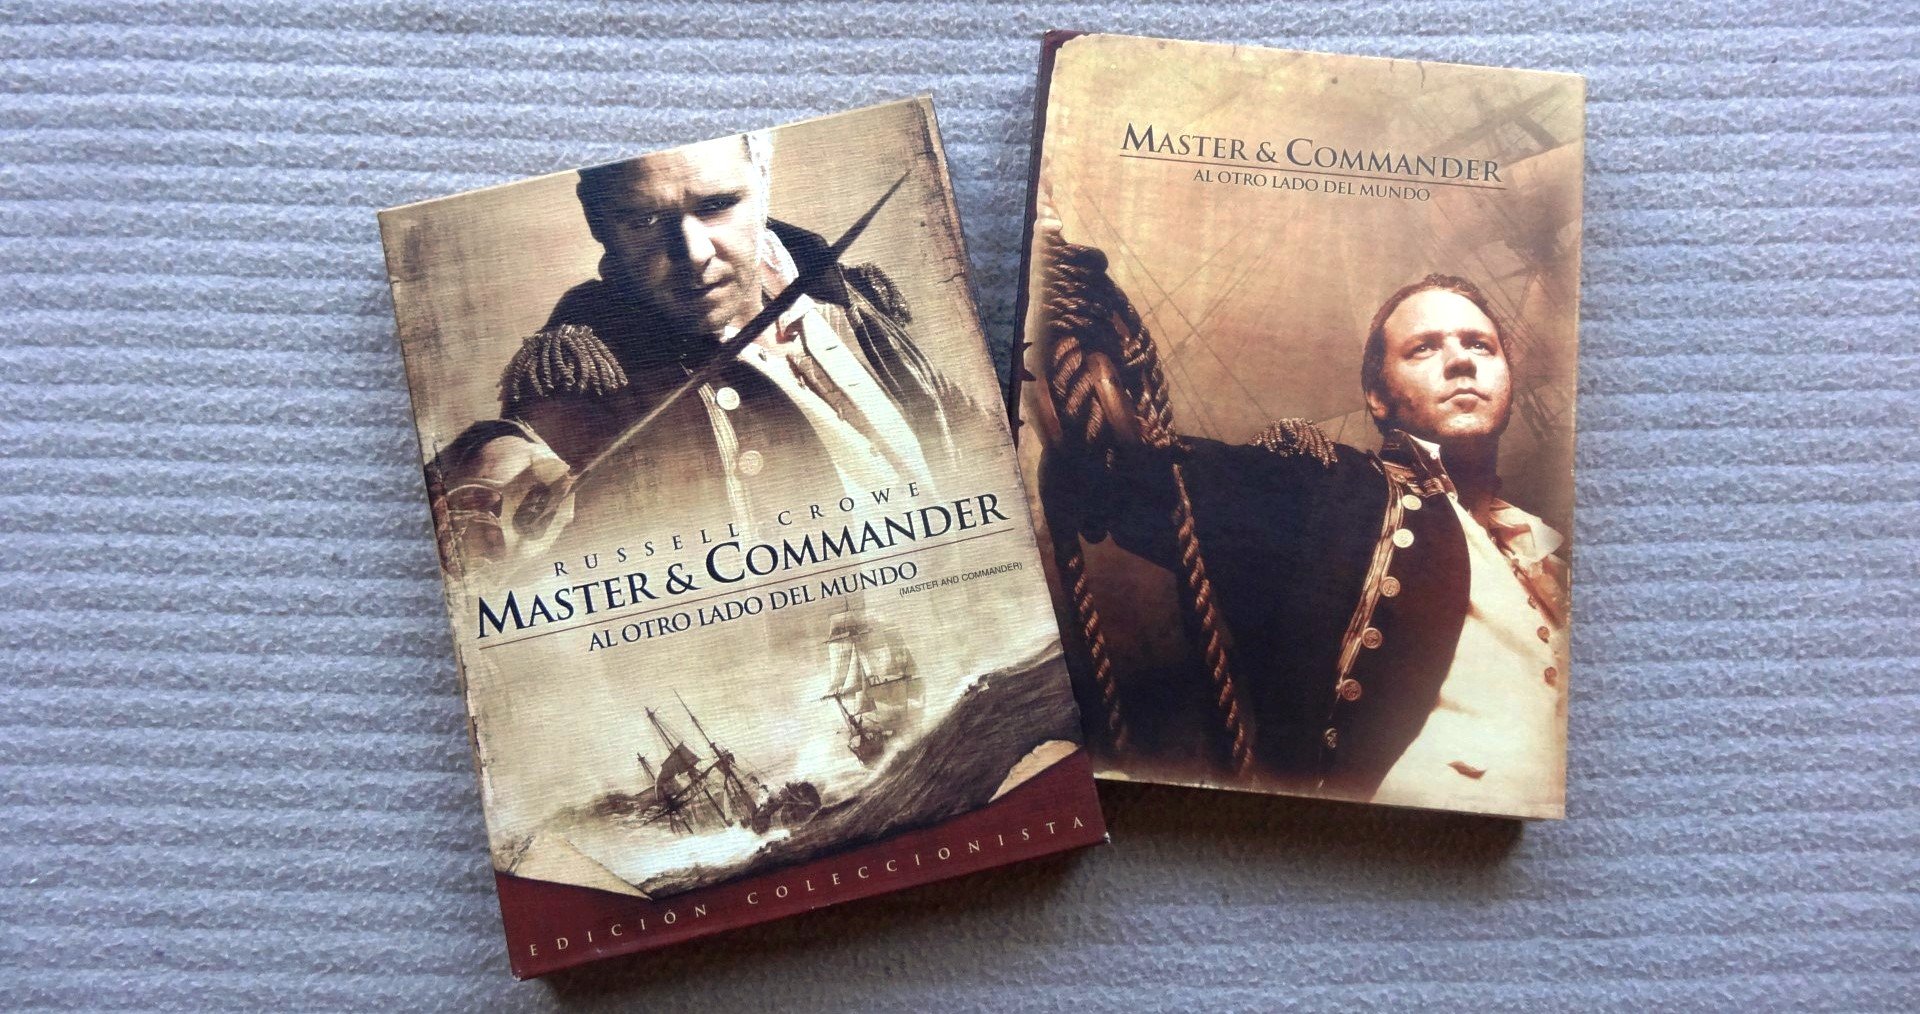 Master & Commander